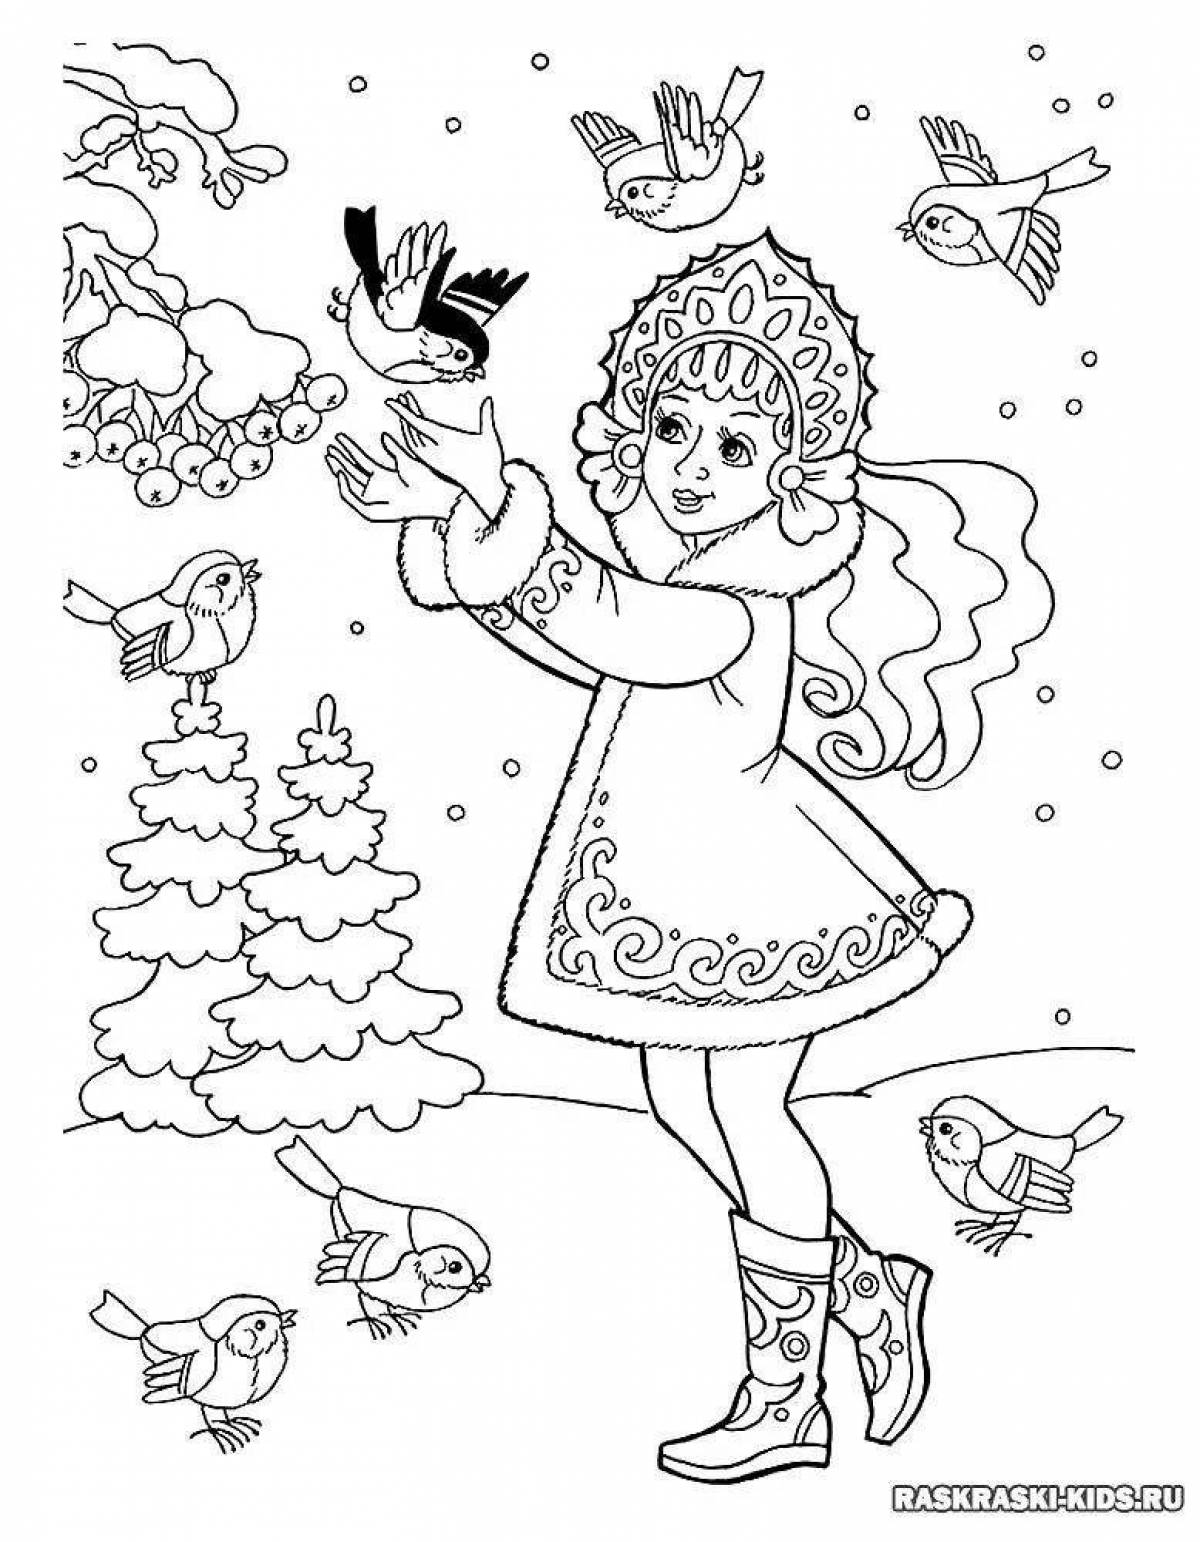 Adorable snow maiden coloring book